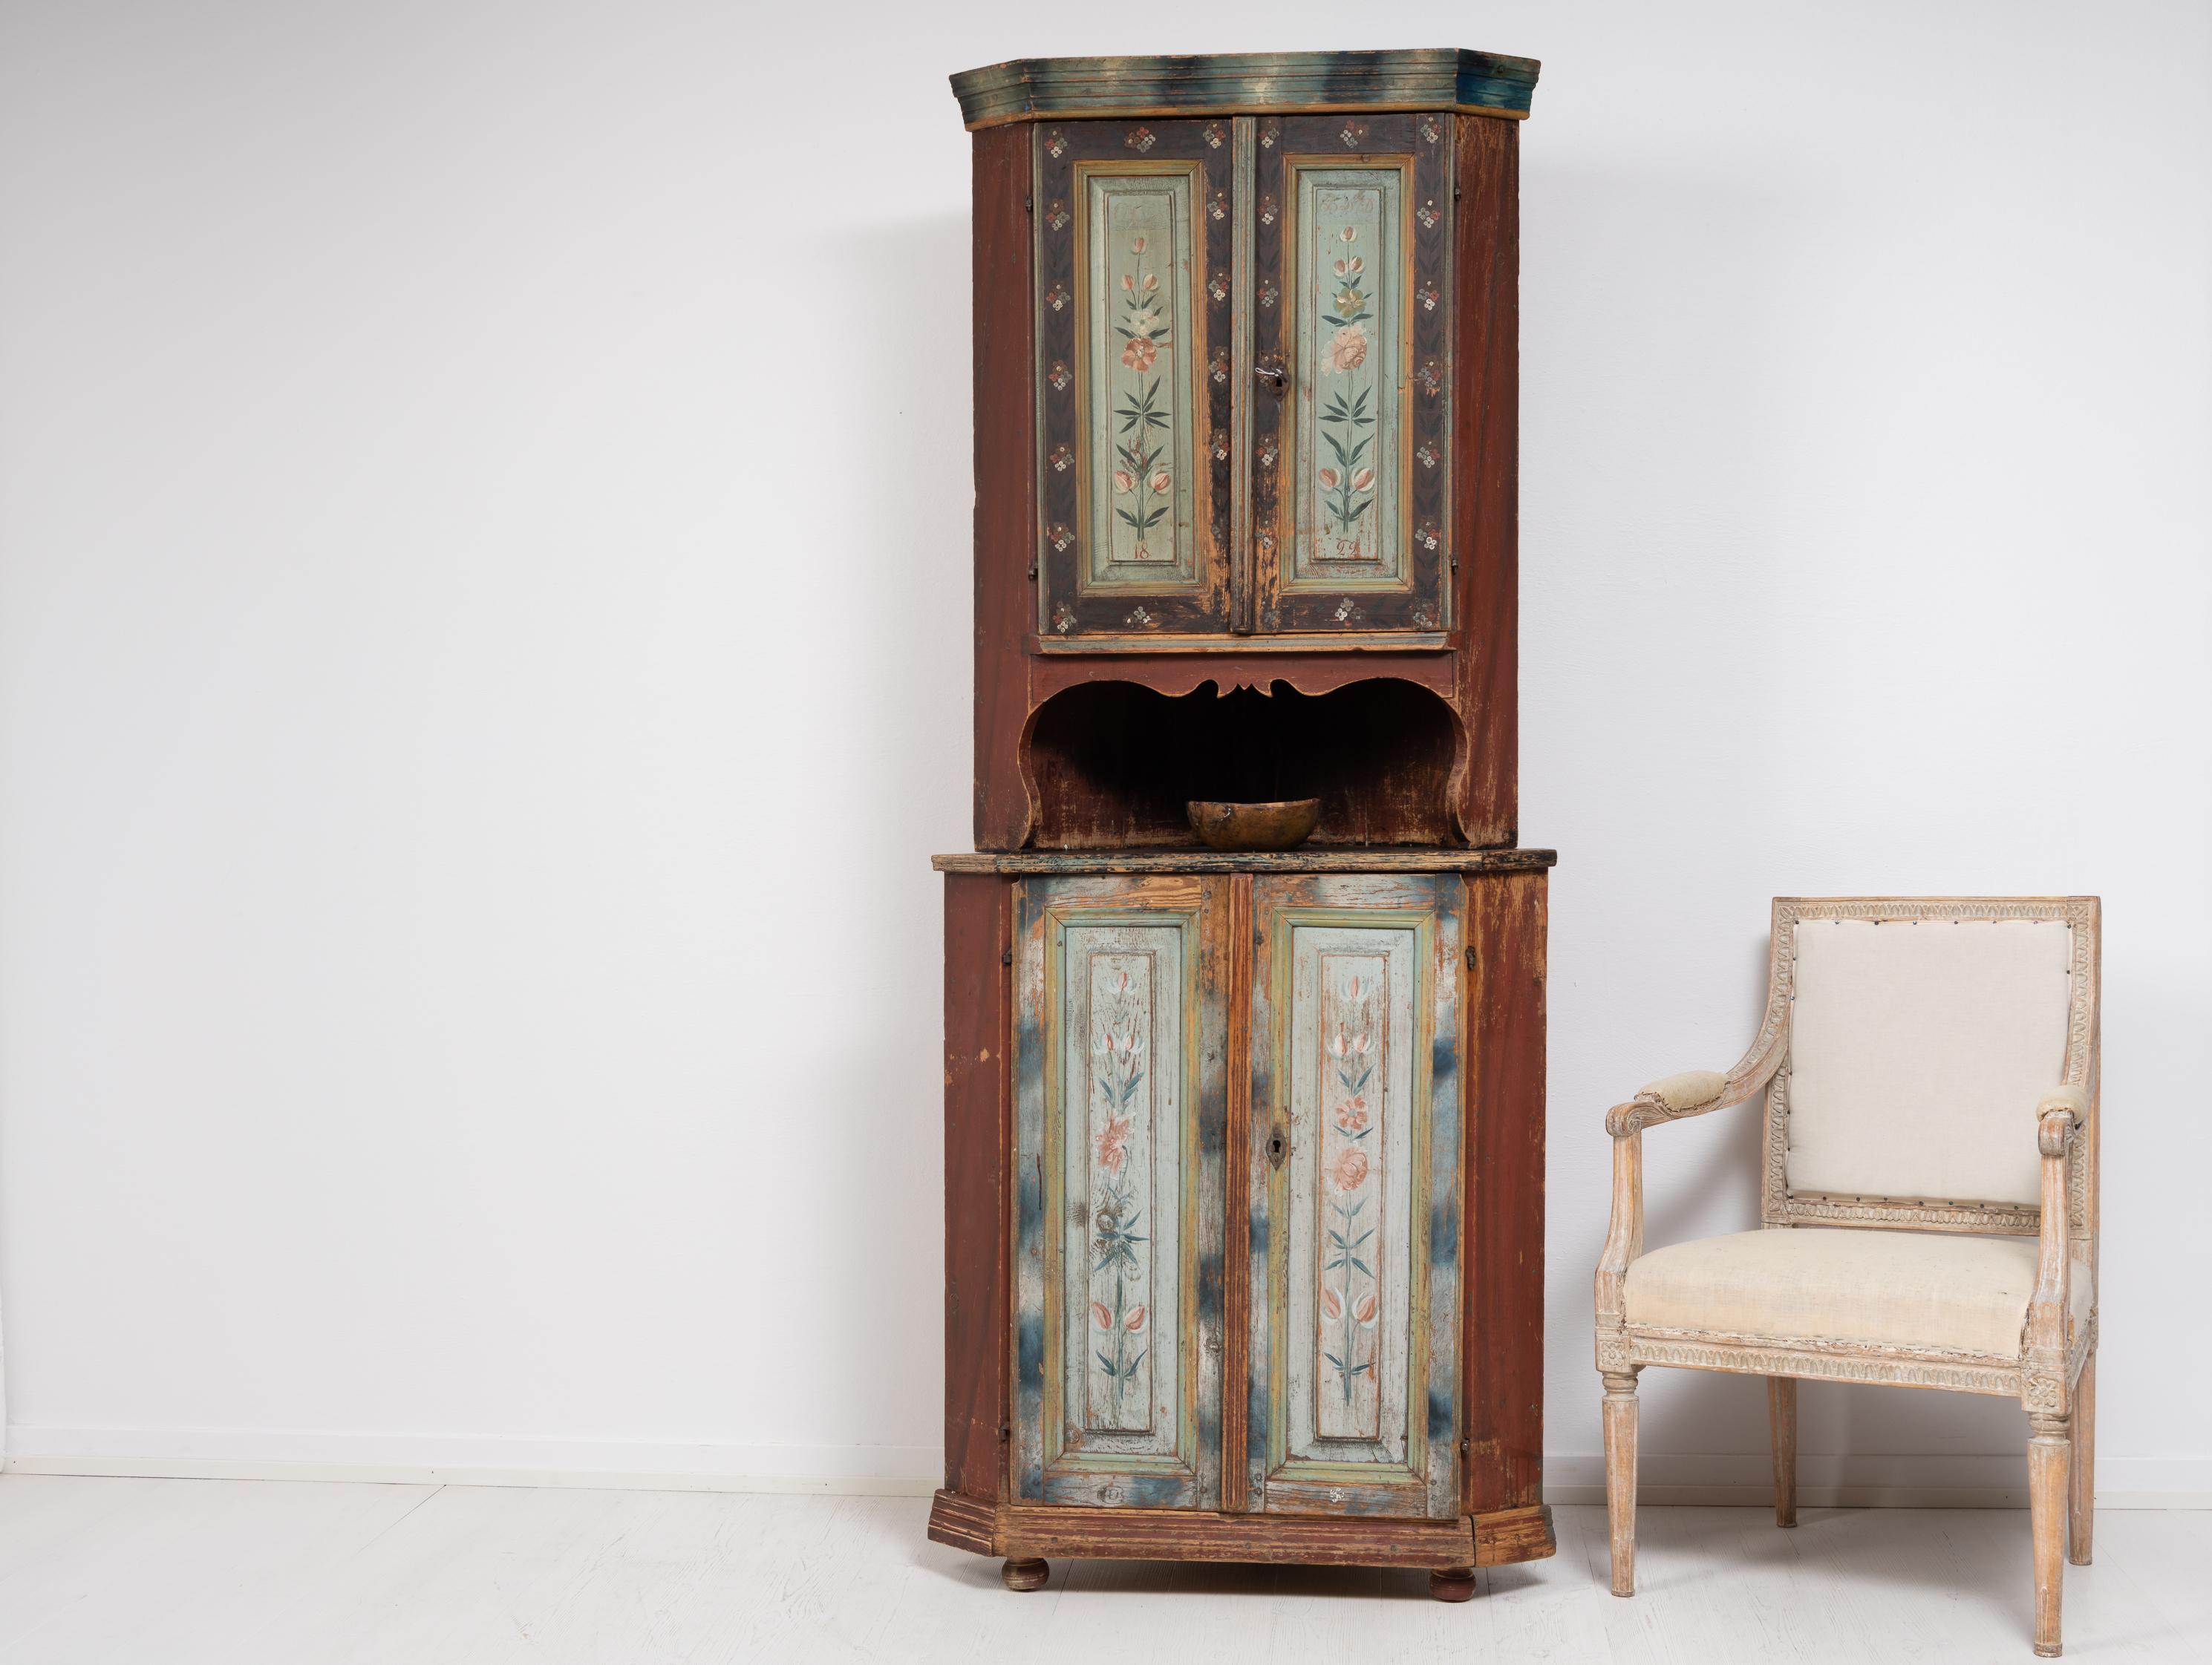 Rare meuble d'angle du nord de la Suède fabriqué dans les premières années du XIXe siècle, entre 1810 et 1820. L'armoire est en pin et se compose de deux parties. Il présente la peinture décorative d'origine avec l'authentique patine du temps. La